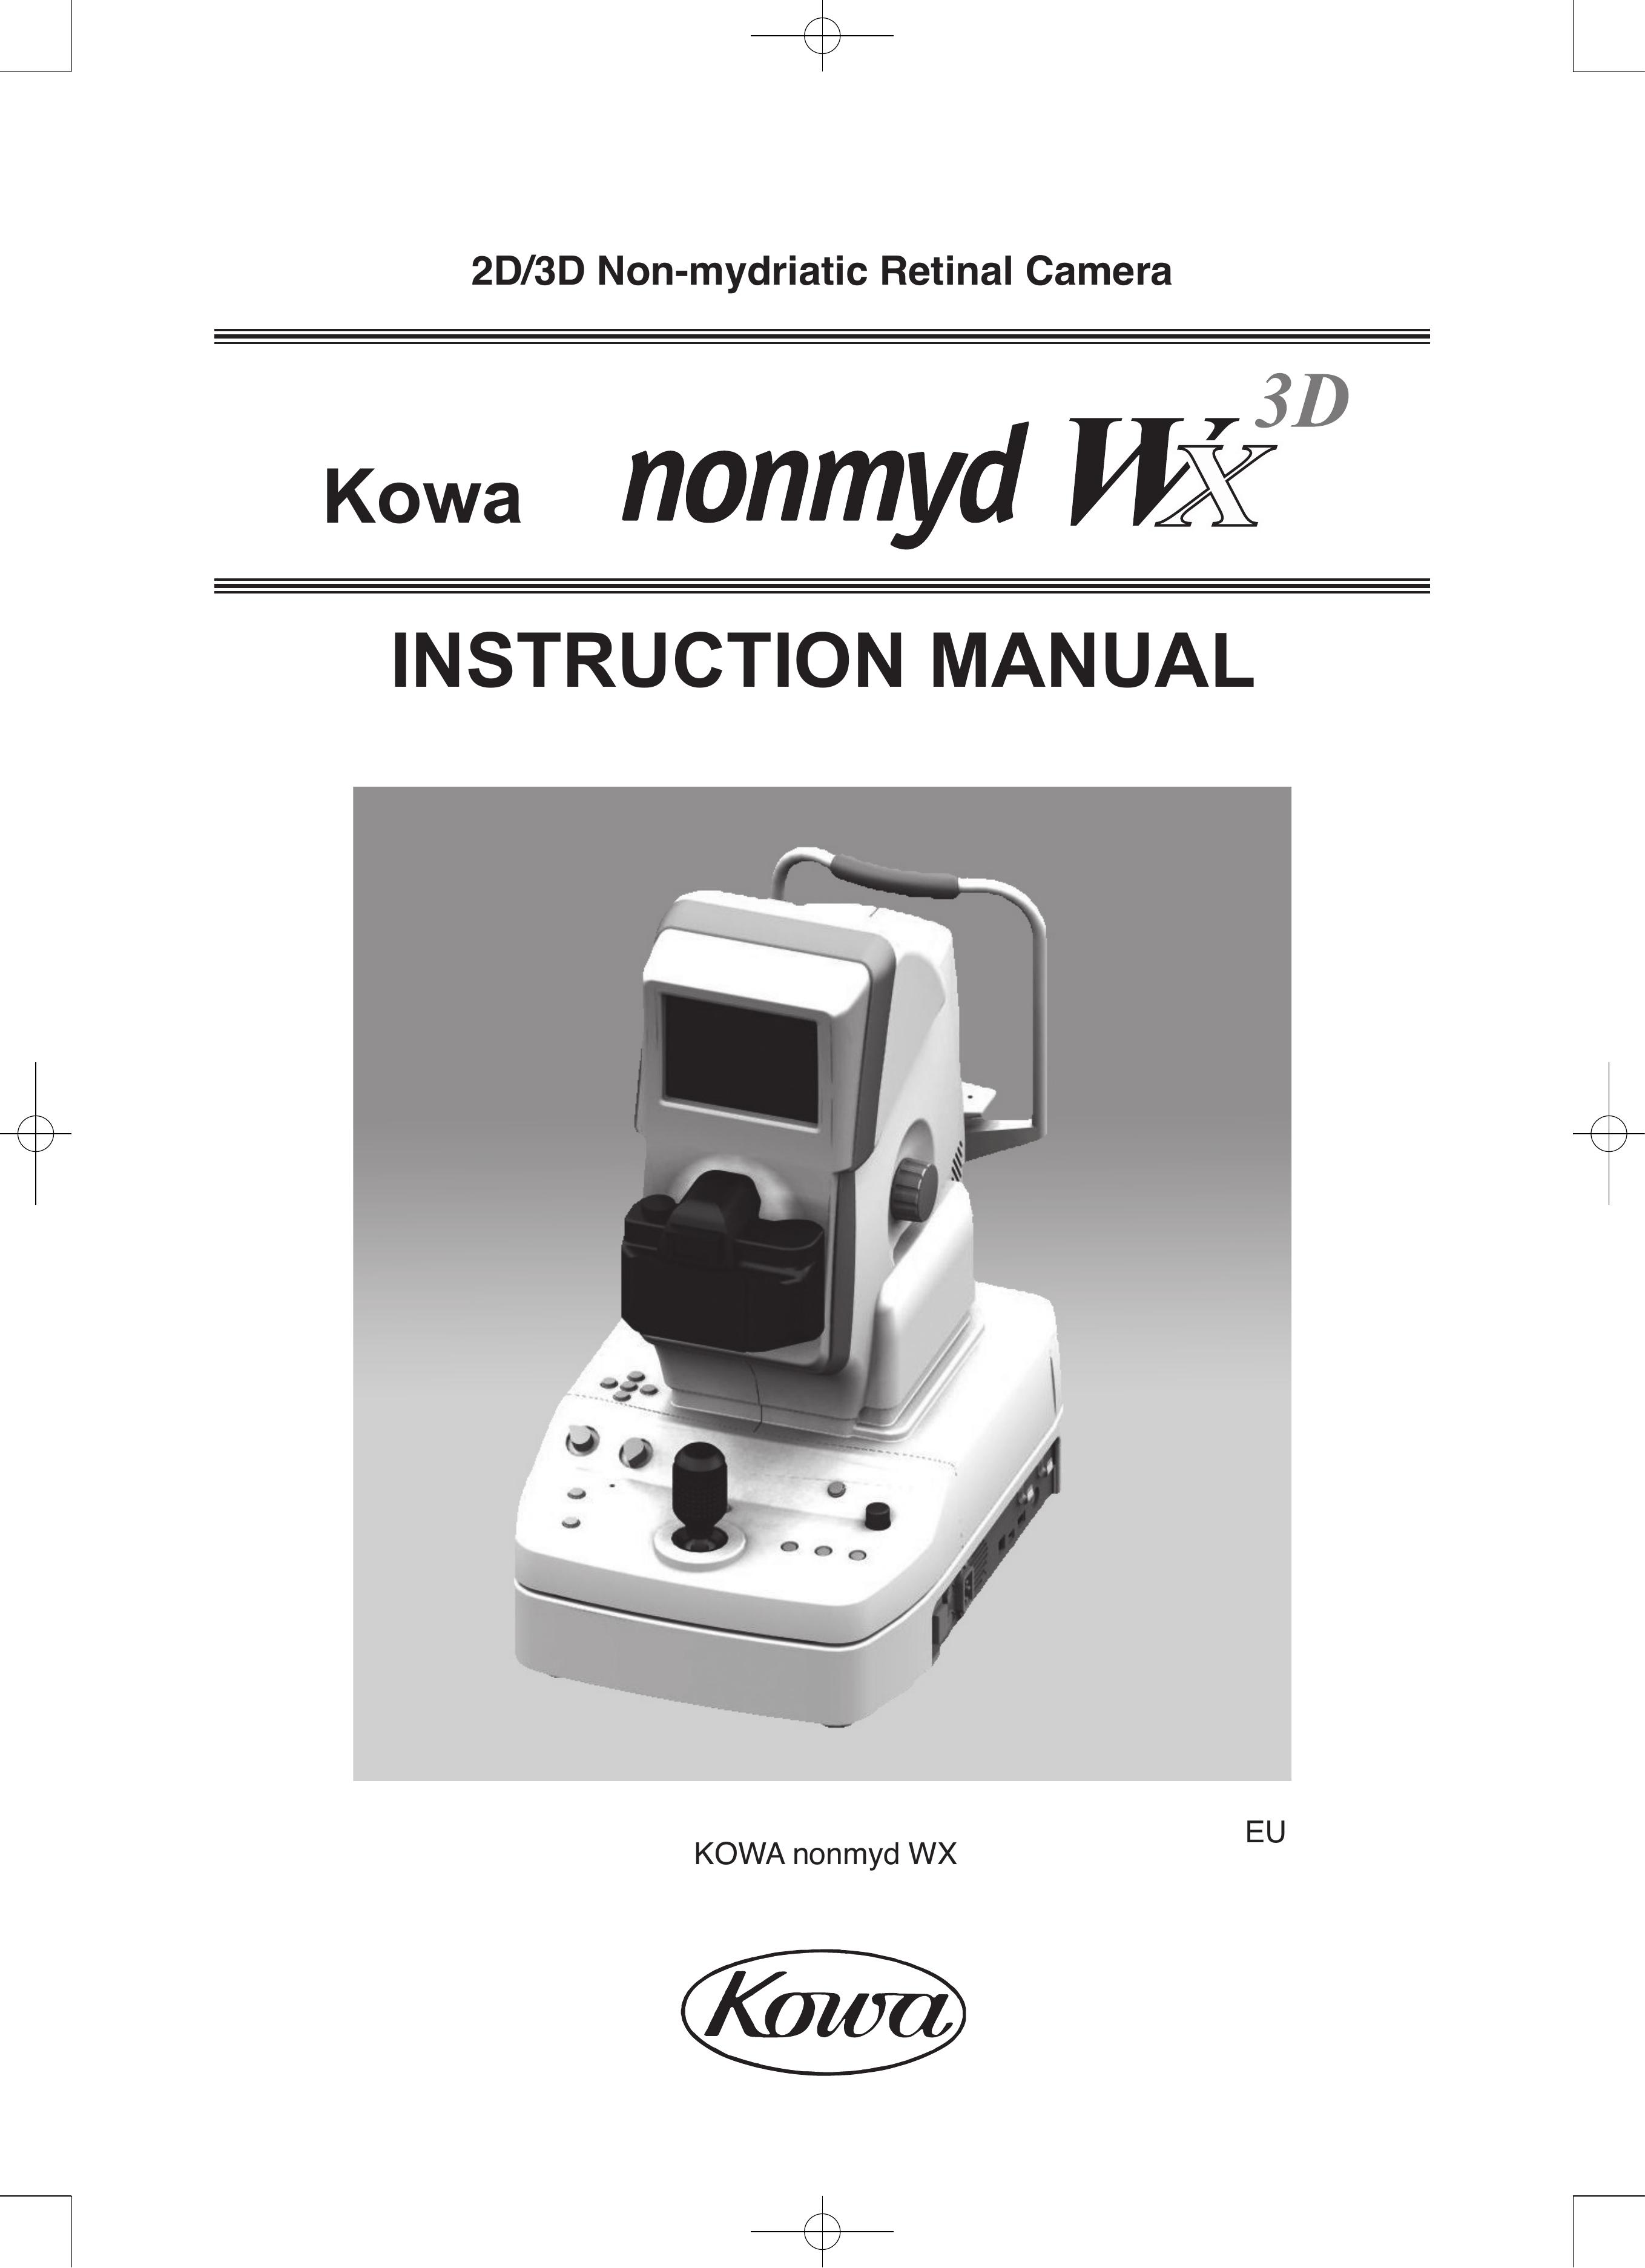 Kowa nonmyd WX 3D Digital Camera User Manual